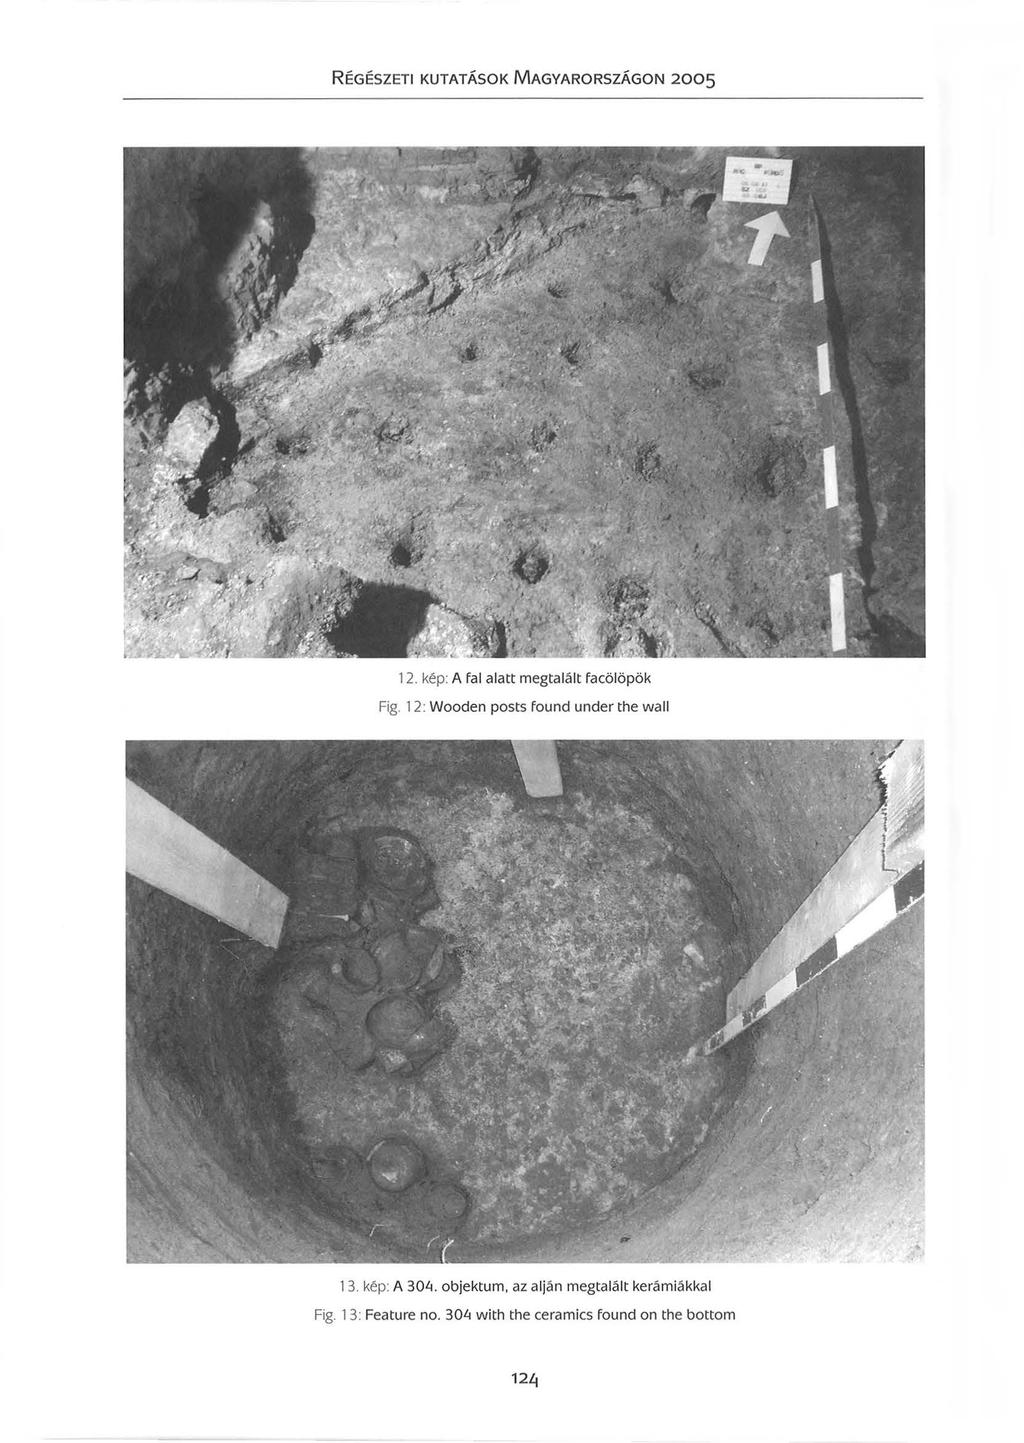 12. kép: A fal alatt megtalált facölöpök Fig. 12: Wooden posts found under the wall 13. kép: A 30Li.